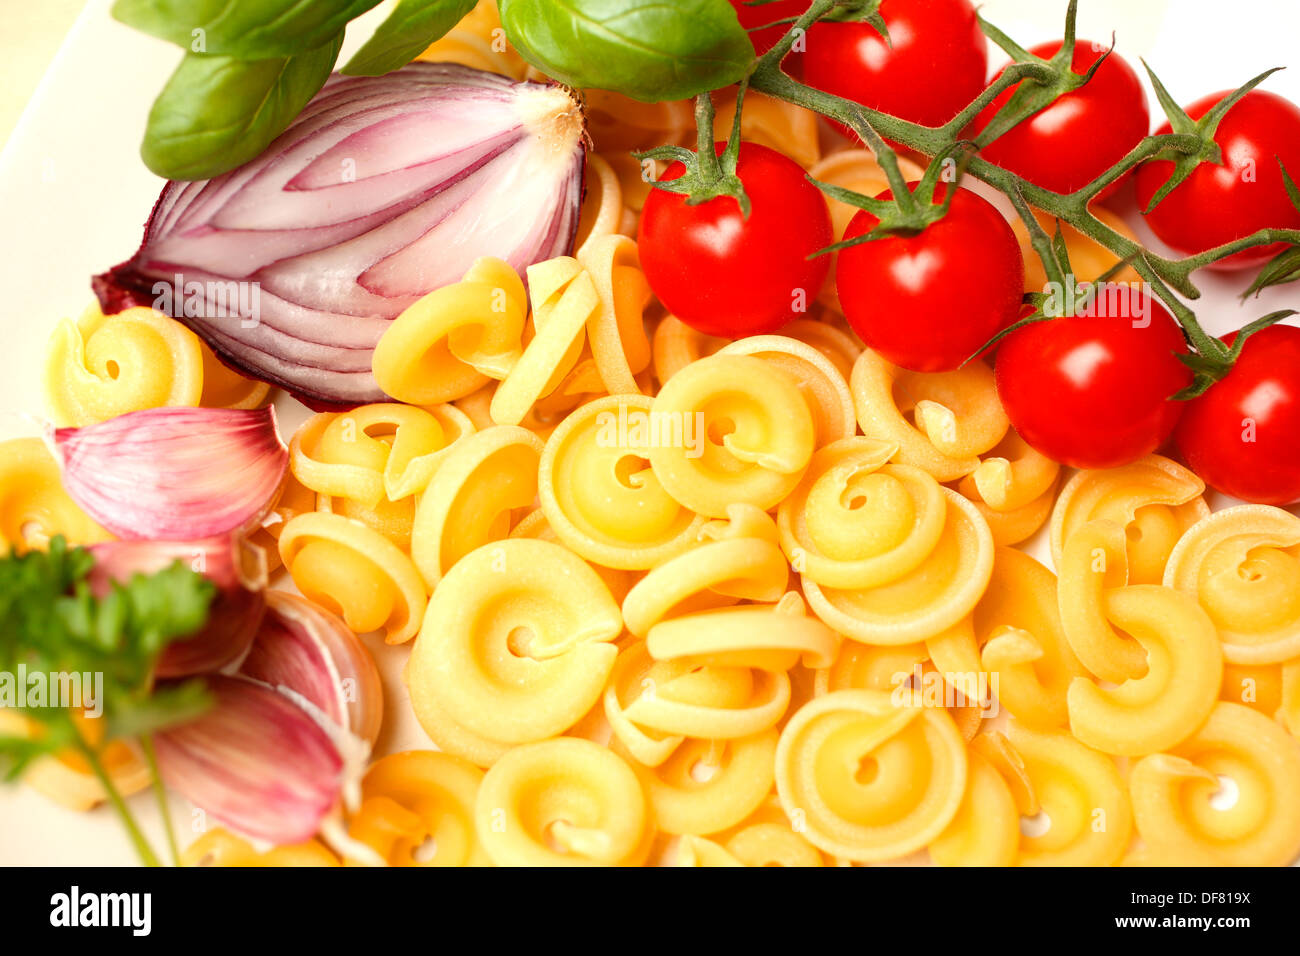 Red Onion, cherry tomatoes, fresh basil, garlic and dischi volanti pasta Stock Photo